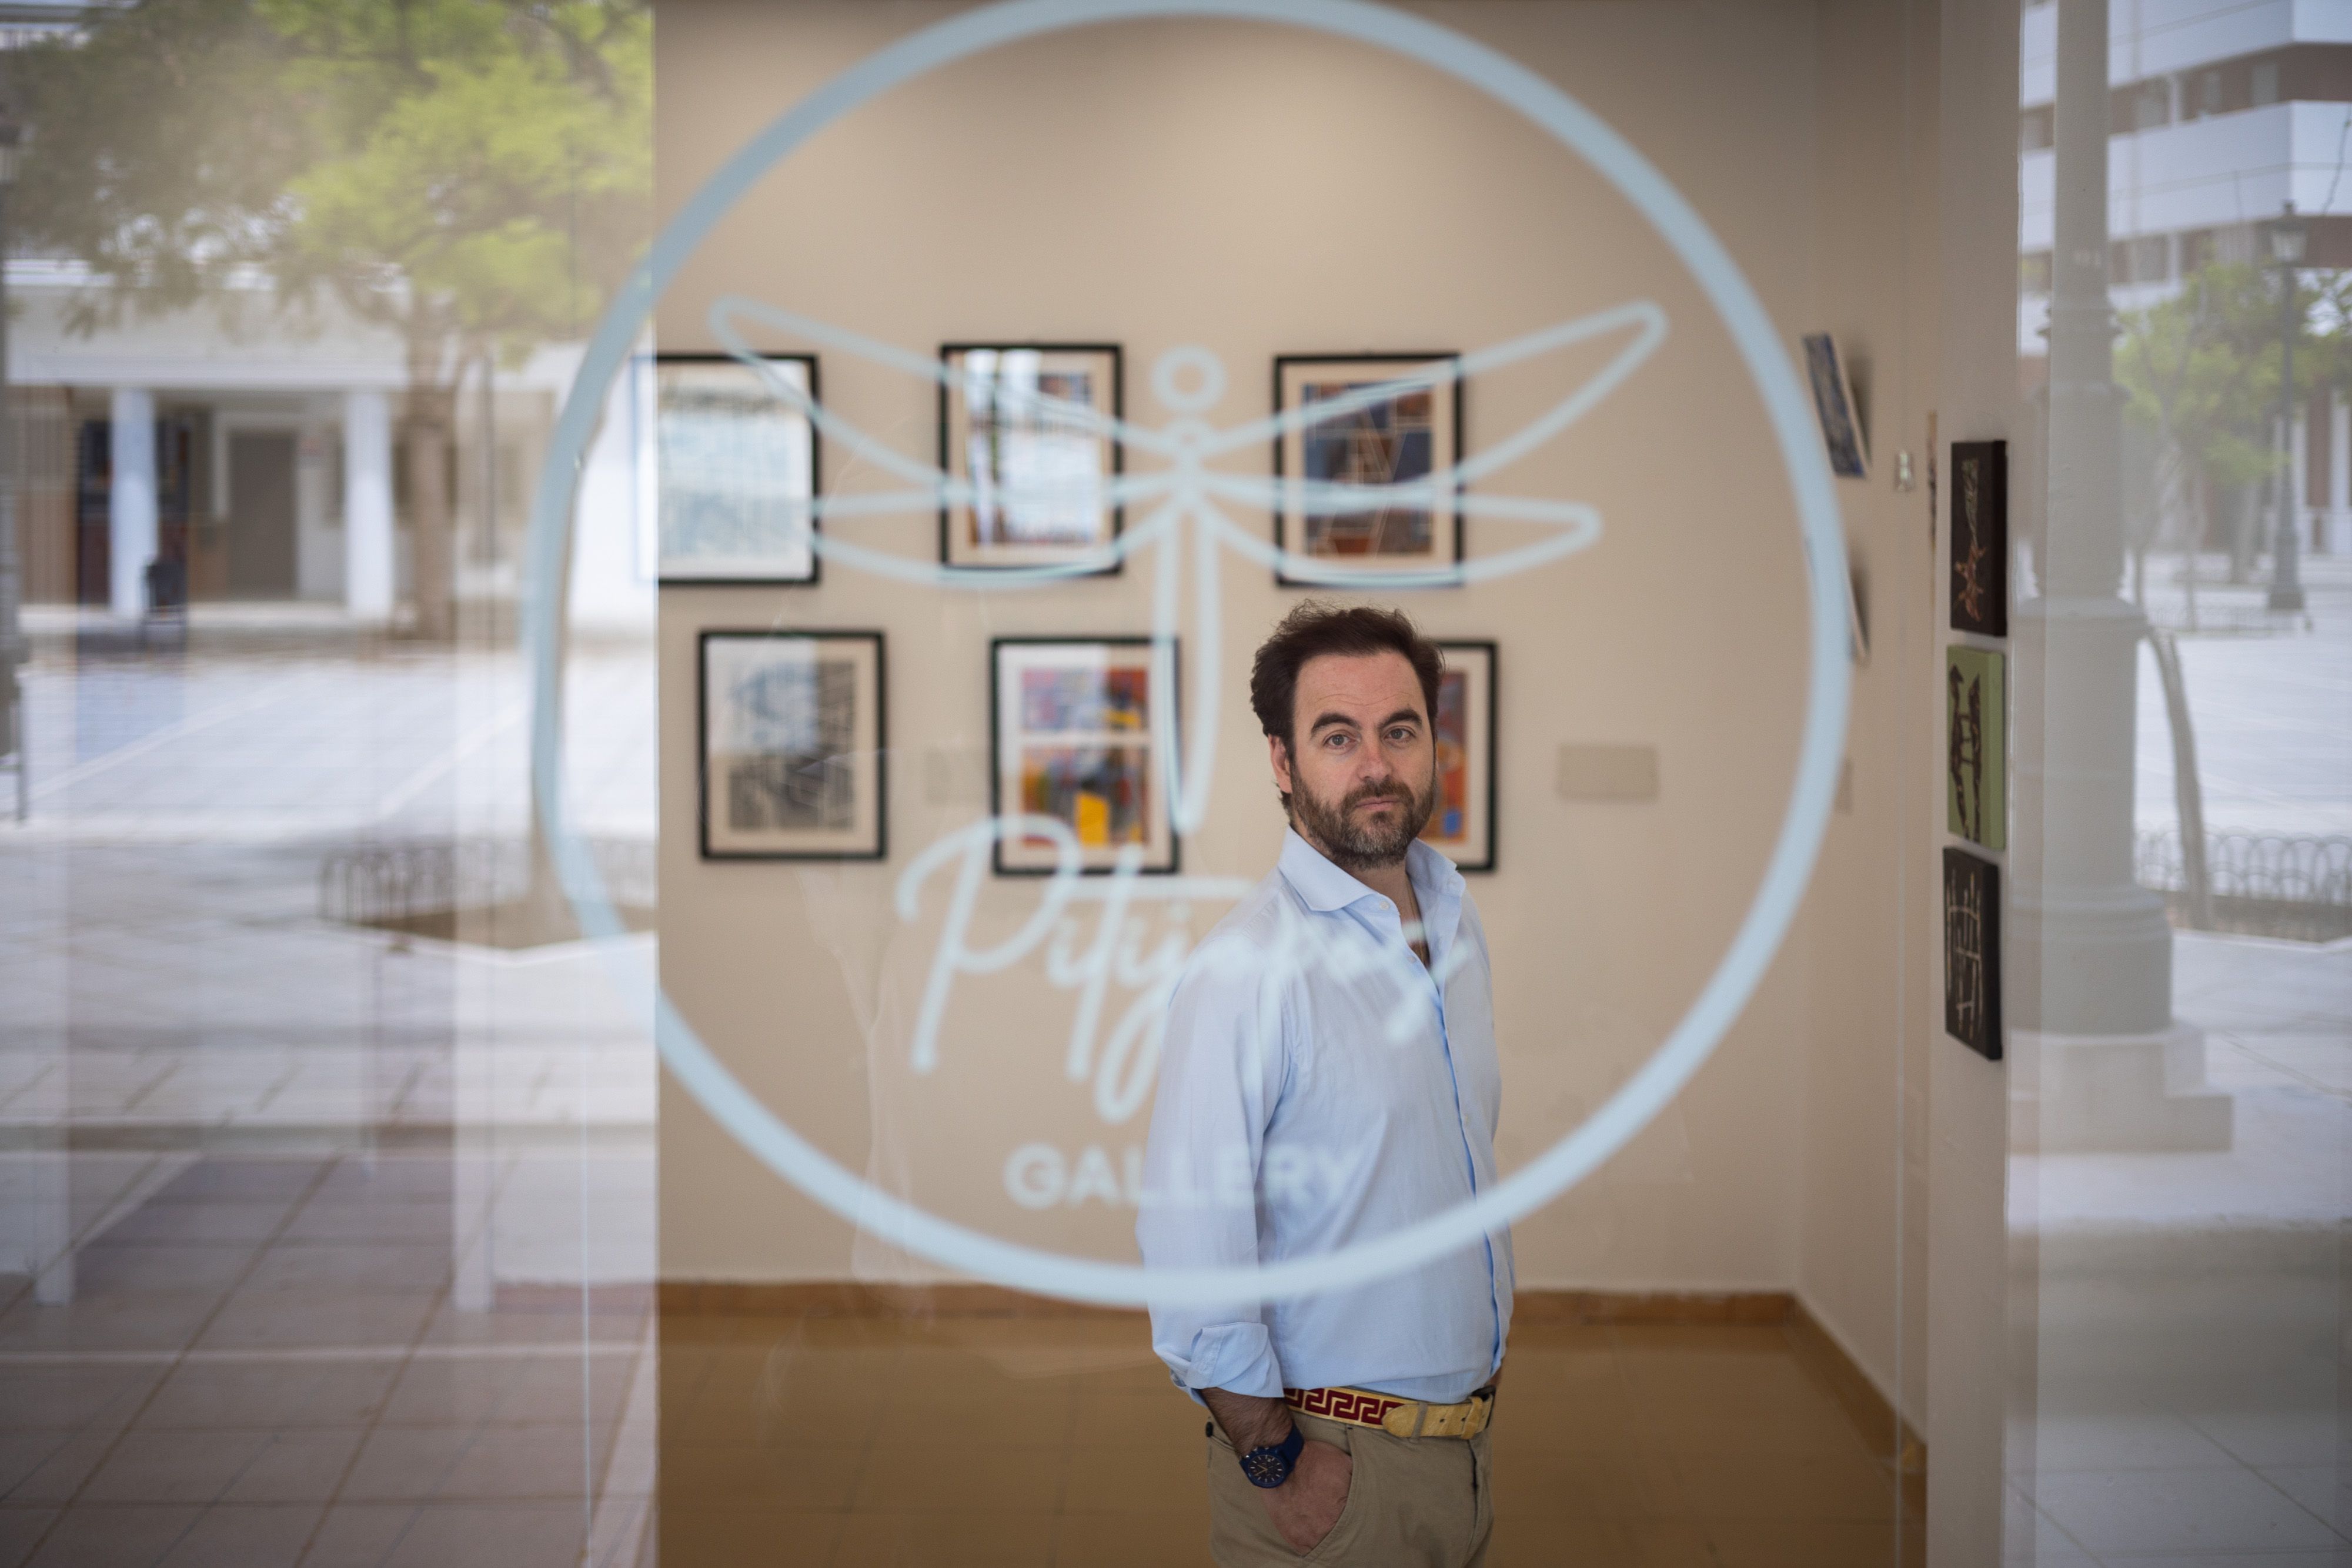 El artista Manuel Puente Piazza fundó Pitijopos, una galería de arte contemporáneo en Sanlúcar, el pasado junio.